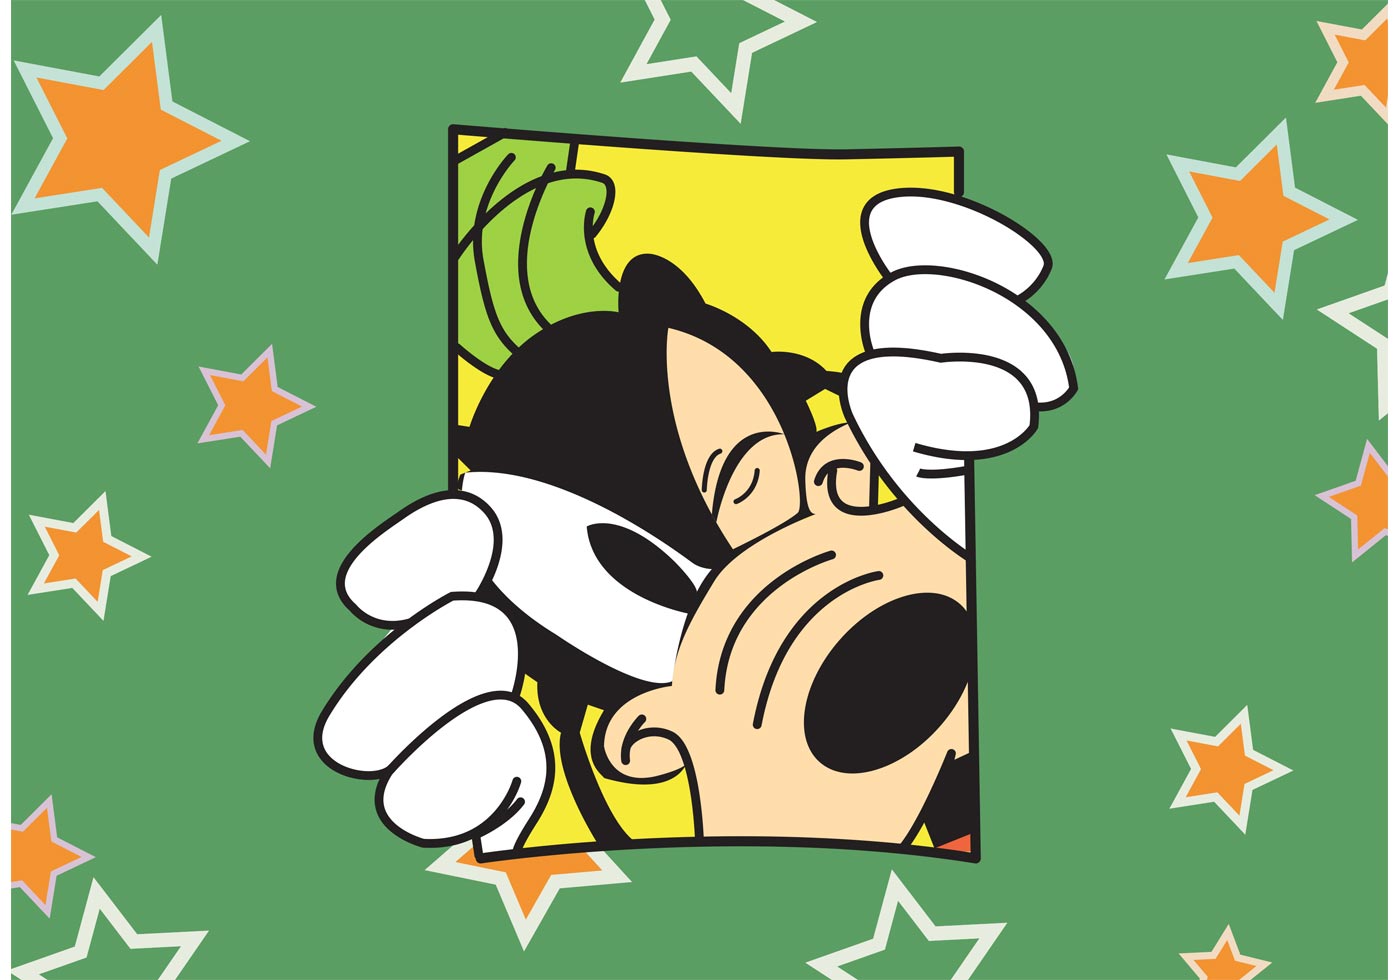 Download Goofy Disney Vector Card - Download Free Vector Art, Stock ...